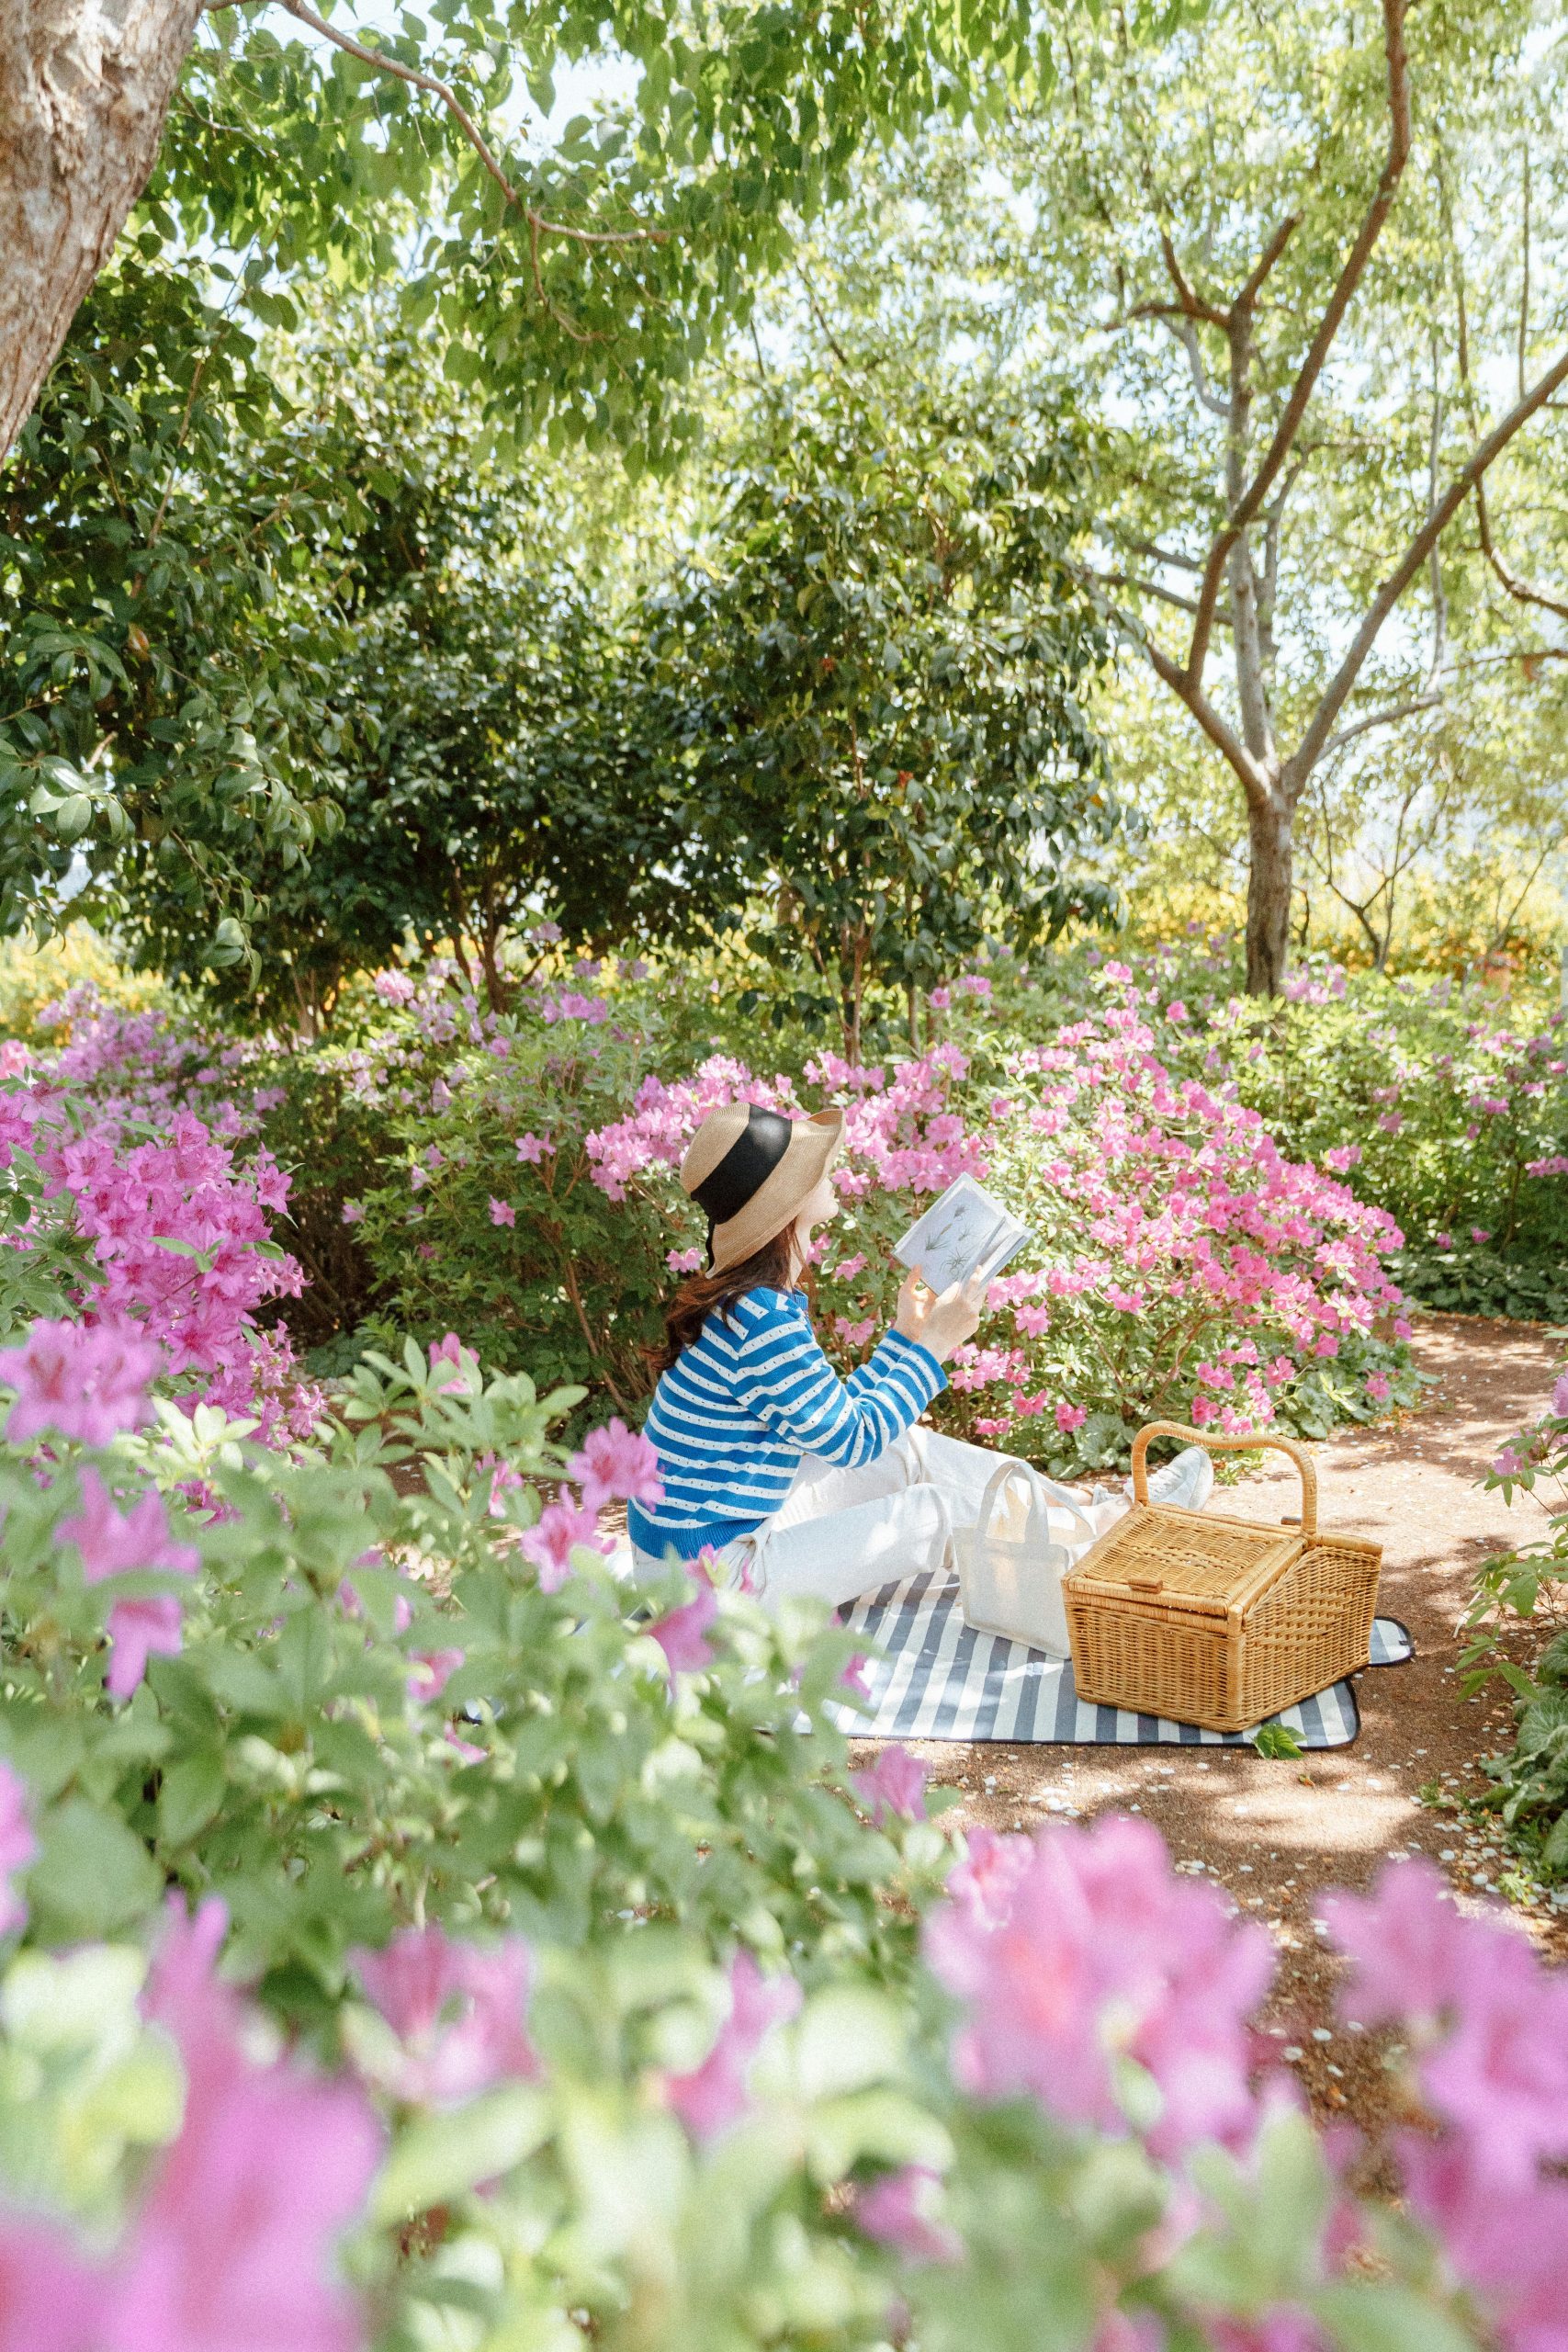 Eine Frau sitzt auf einer Decke in einem schönen Park mit grünene Bäumen und rosa blühenden Büschen. Sie hält ein Buch in der Hand und liest.